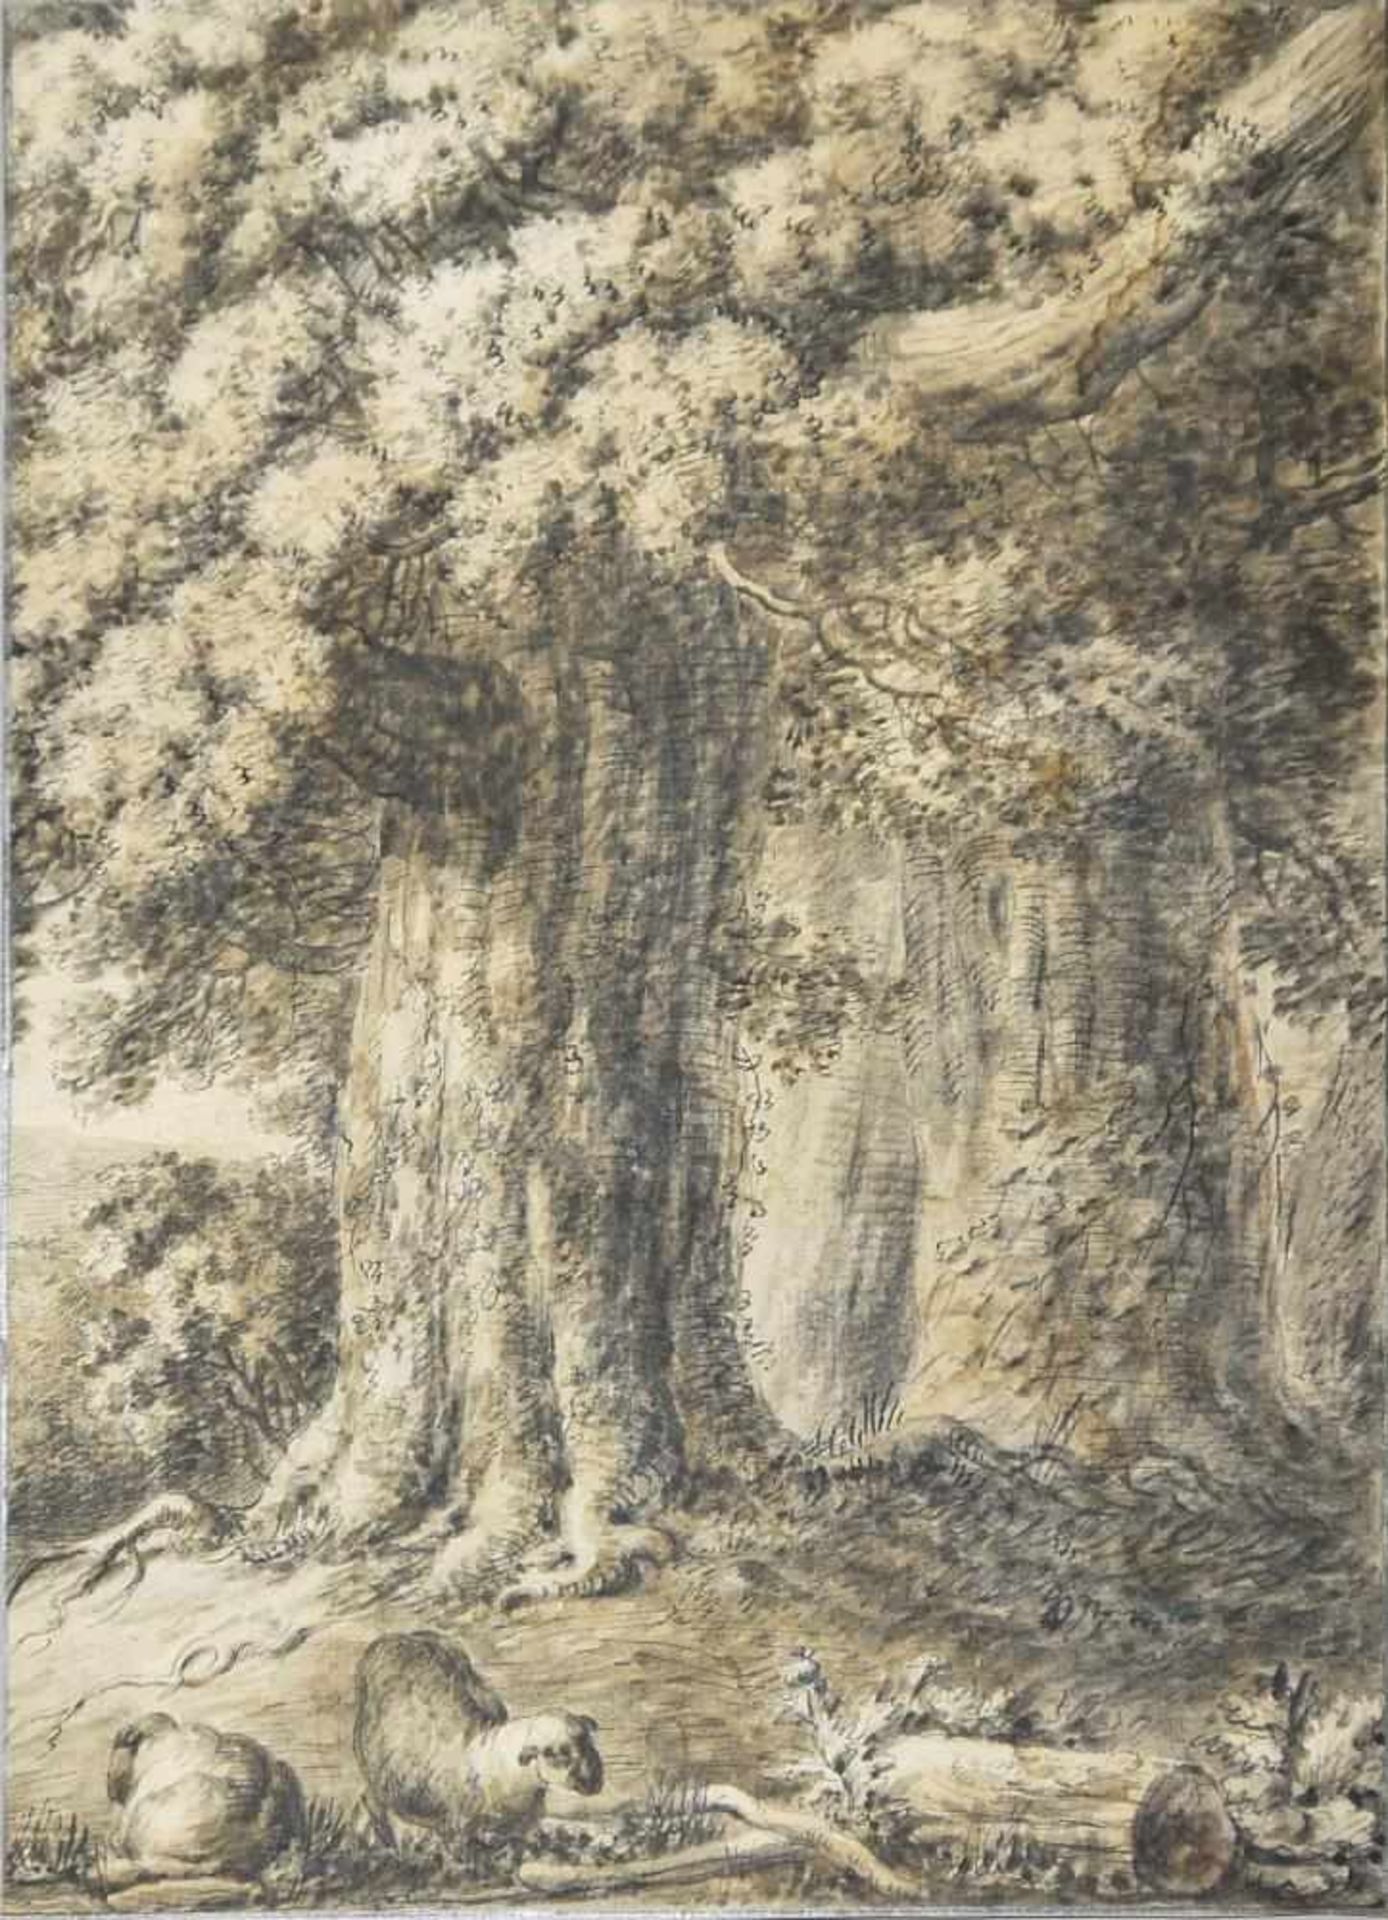 Jakob van der Does, Schafe vor mächtigen Bäumen, sign. Tuschezeichnung von 1641 Jakob van der